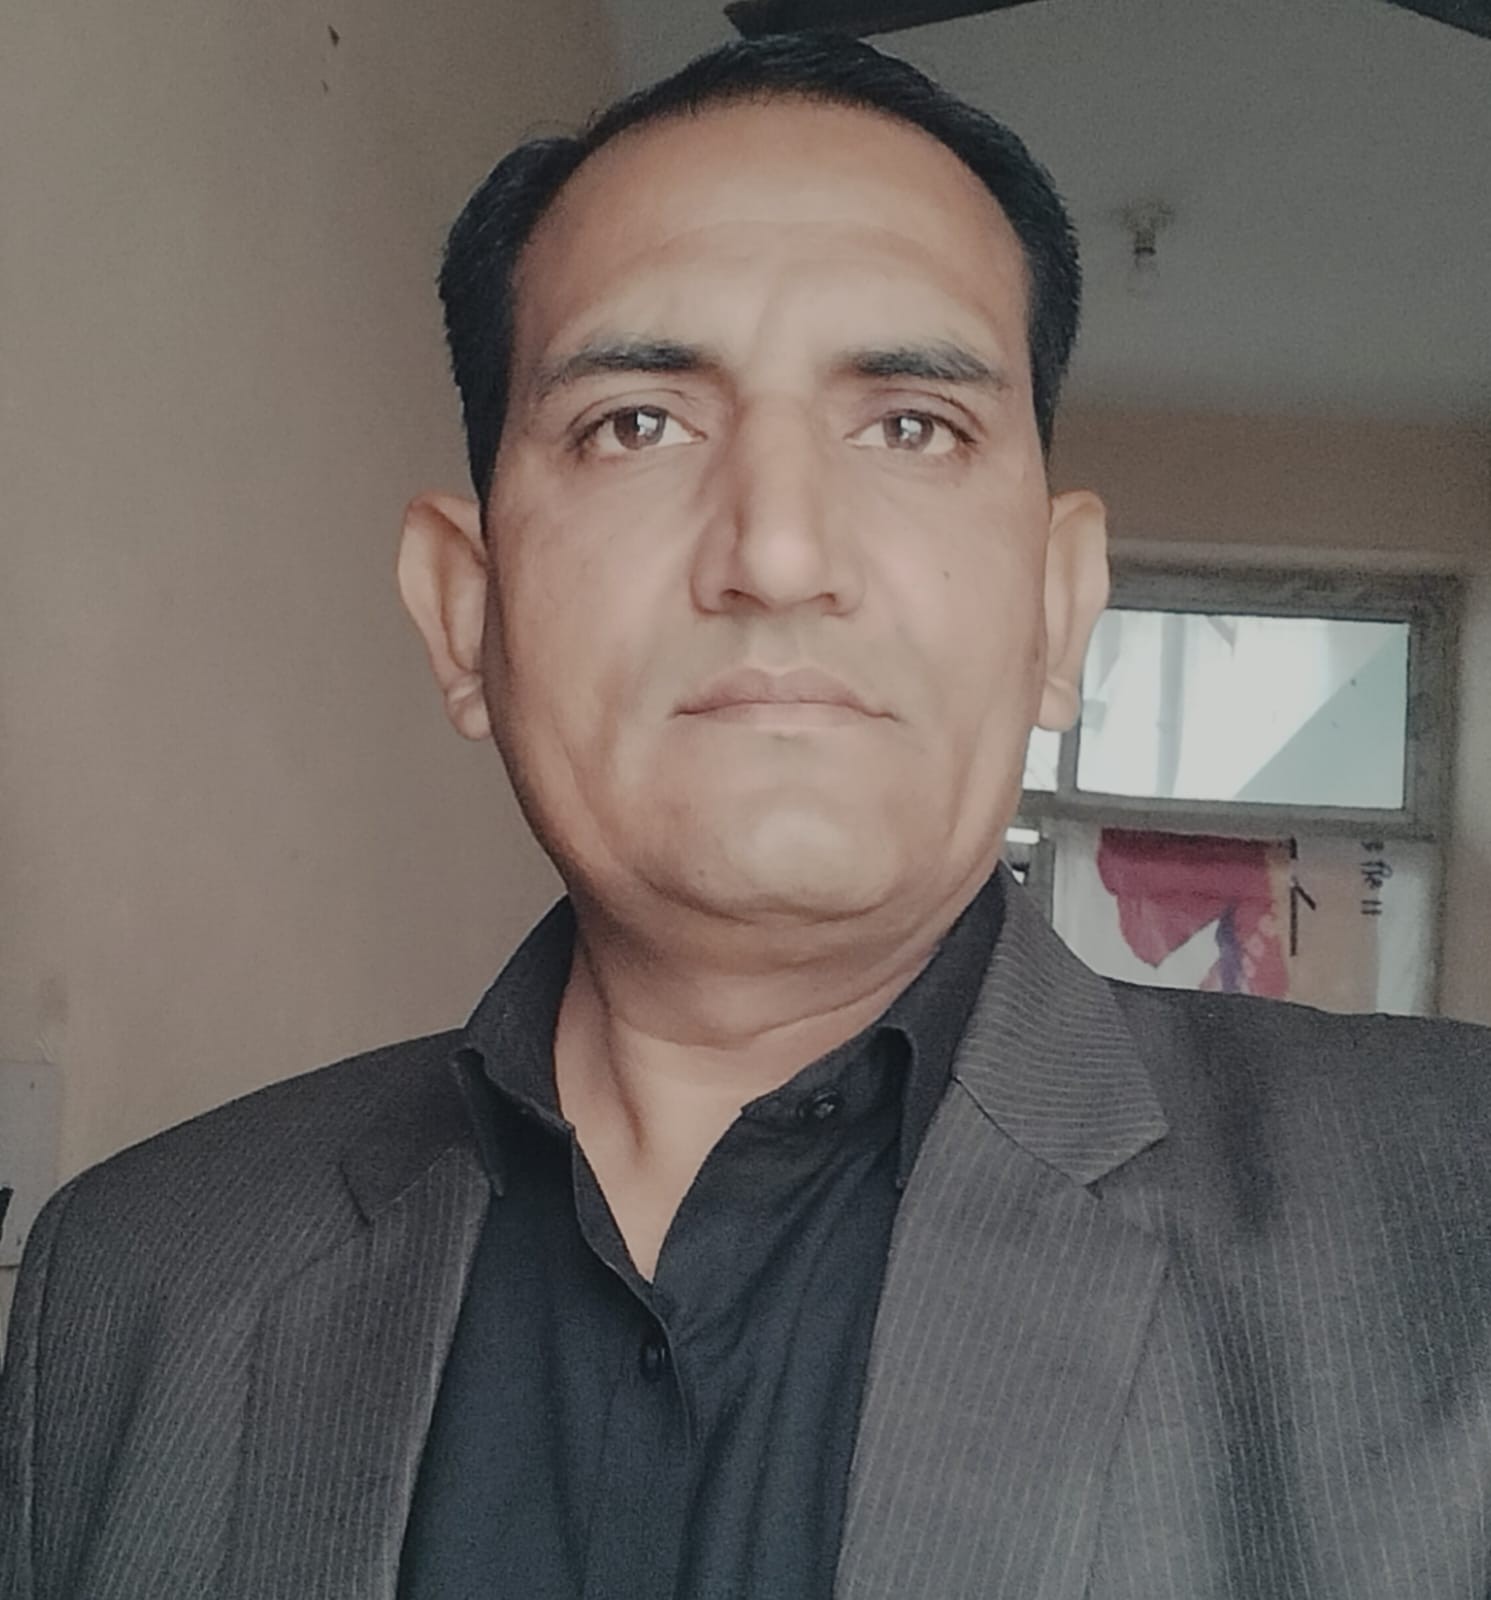 महावीर सिंह चौधरी राष्ट्रीय जाट महासभा (भारत) के जयपुर जिला शहर मुख्य सचिव नियुक्त